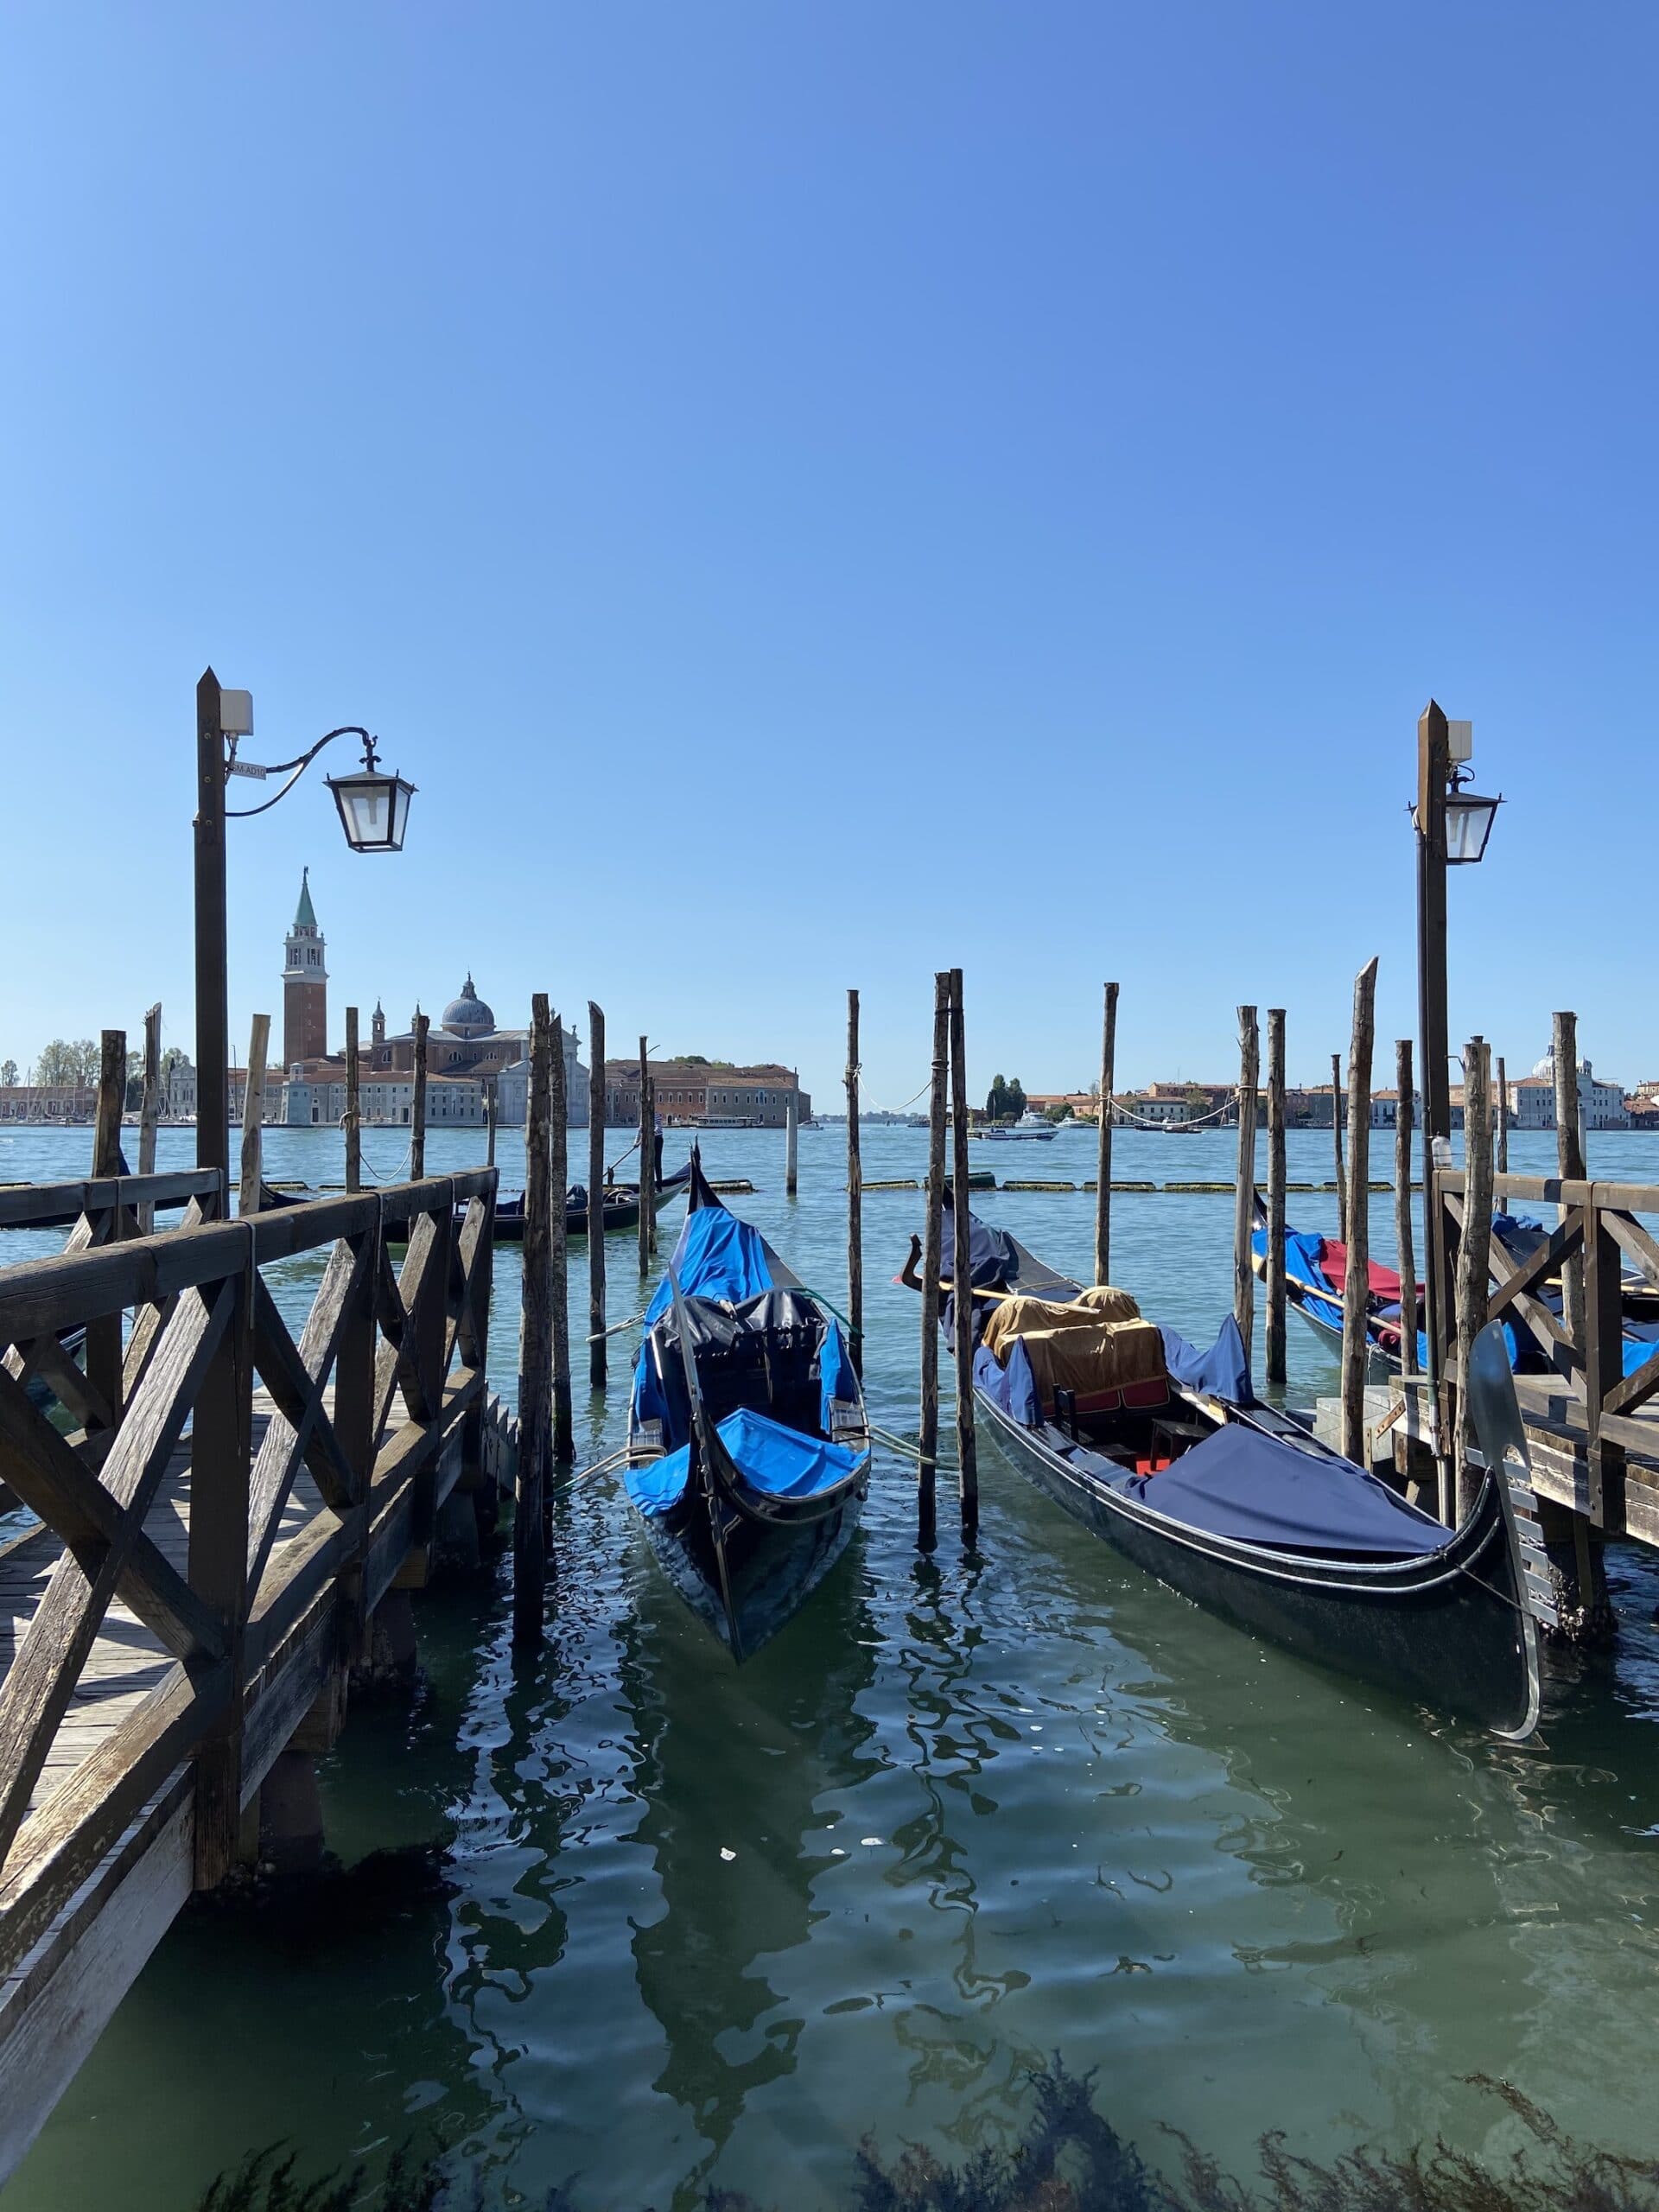 O que fazer em dois dias, ou um final de semana, em Veneza?